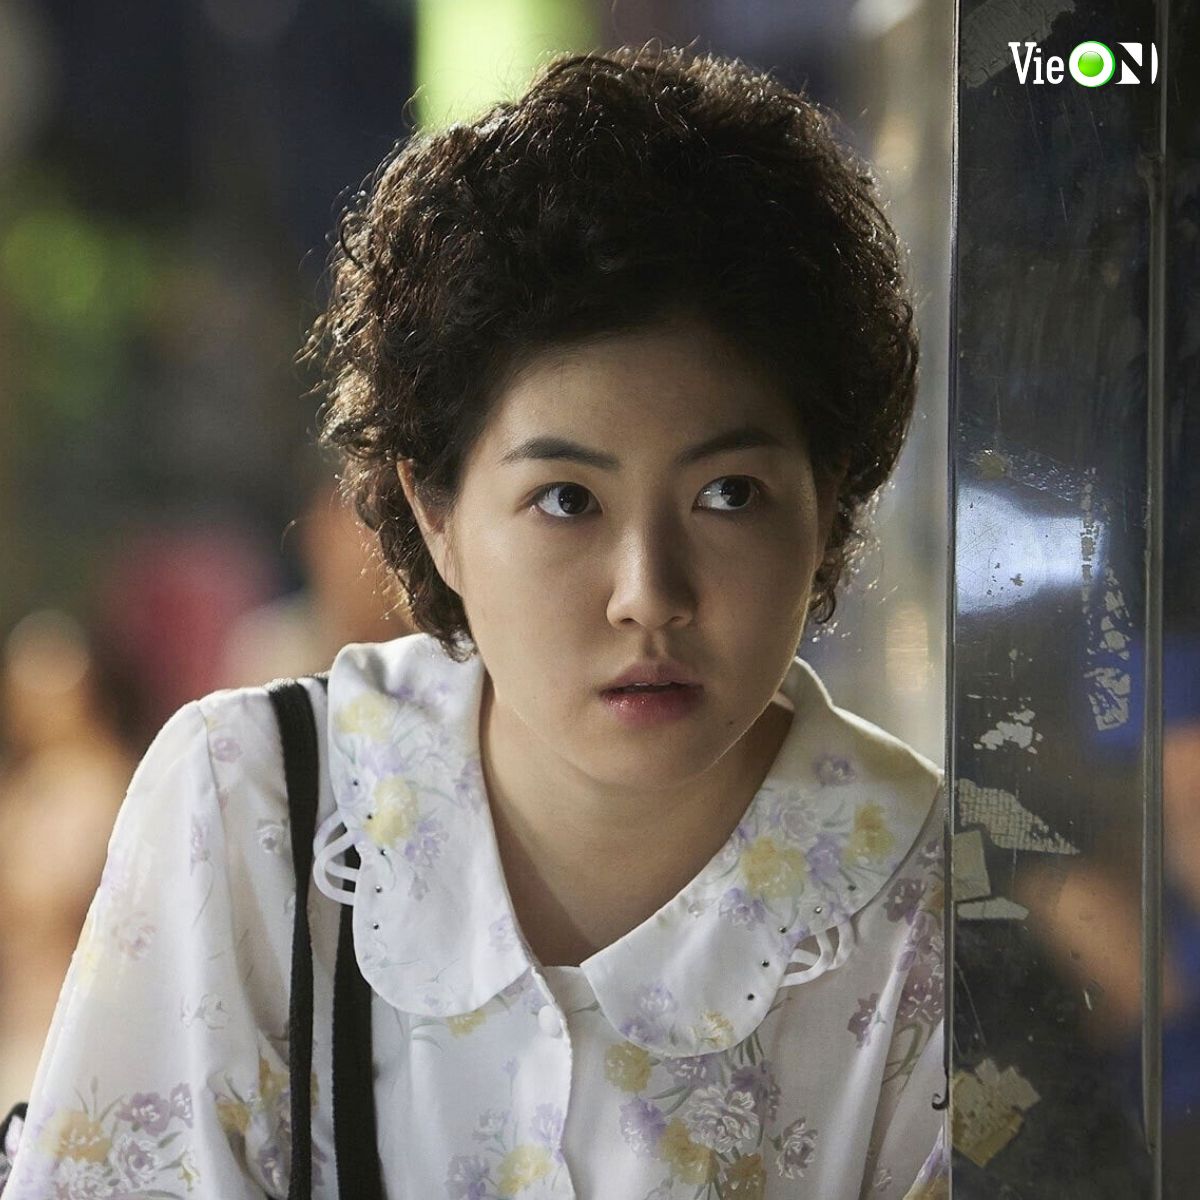 “Cười nội thương” với 8 phim điện ảnh xứ Hàn: “Bỗng Dưng Trúng Số” quăng miếng không gượng ép - ảnh 7